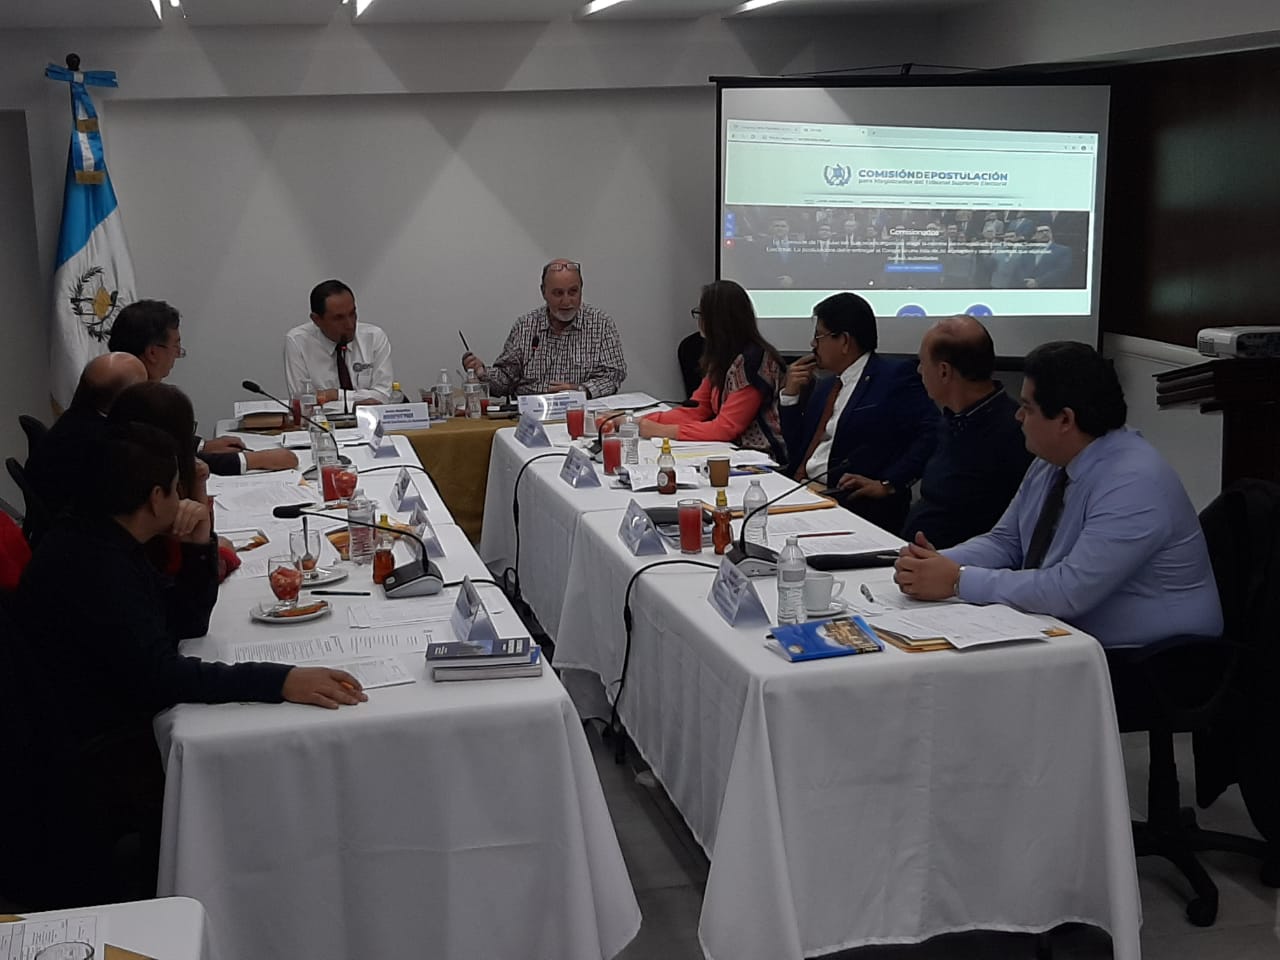 La comisión de postulación de magistrados para el TSE en su reunión de este 1 de febrero 2020. (Foto Prensa Libre: Andrea Domínguez)